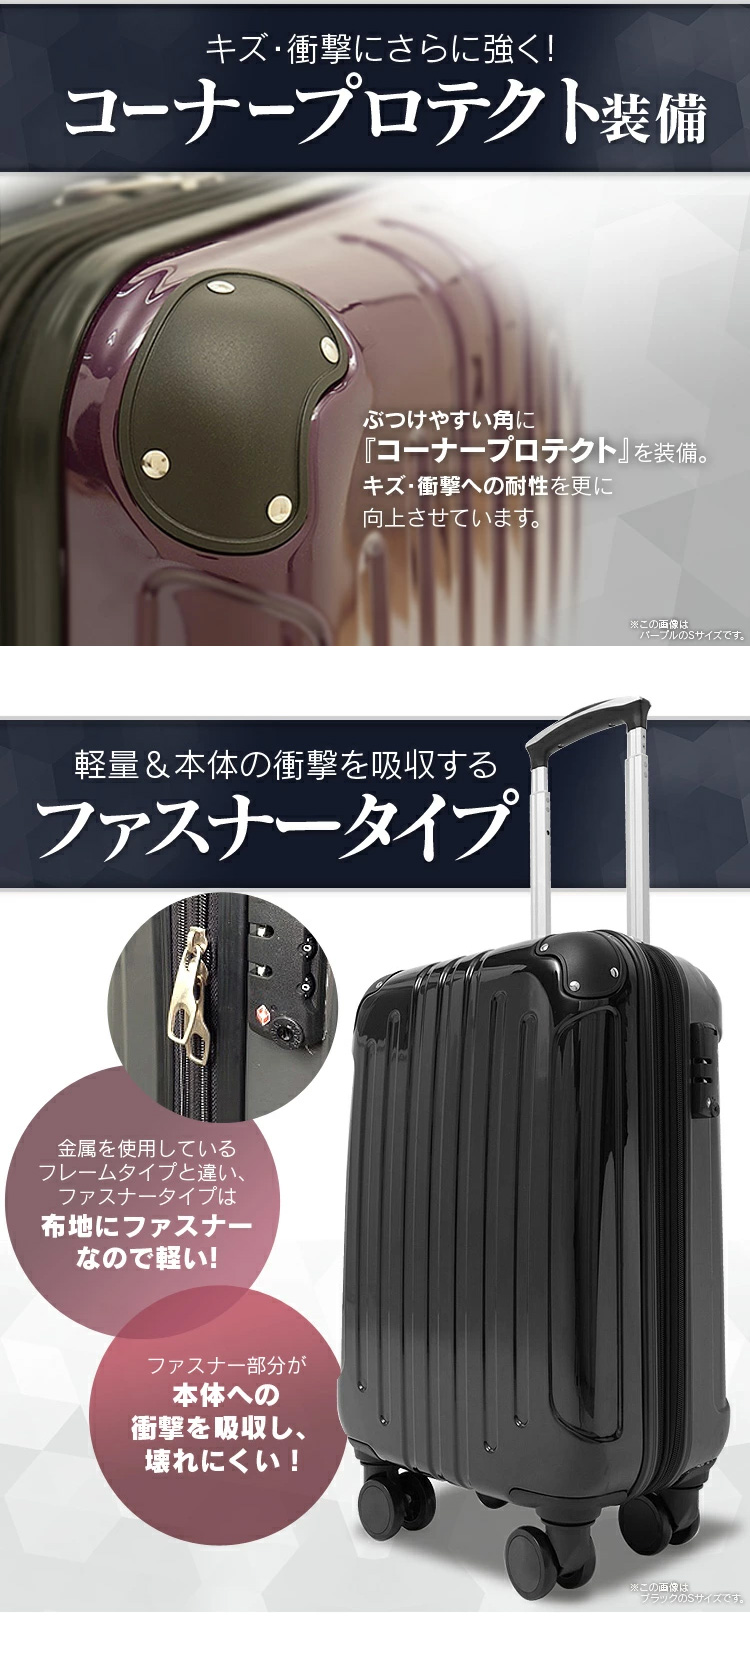 55%OFF!】 新品 スーツケース ベルト TSAロック装備 ピンク パープル